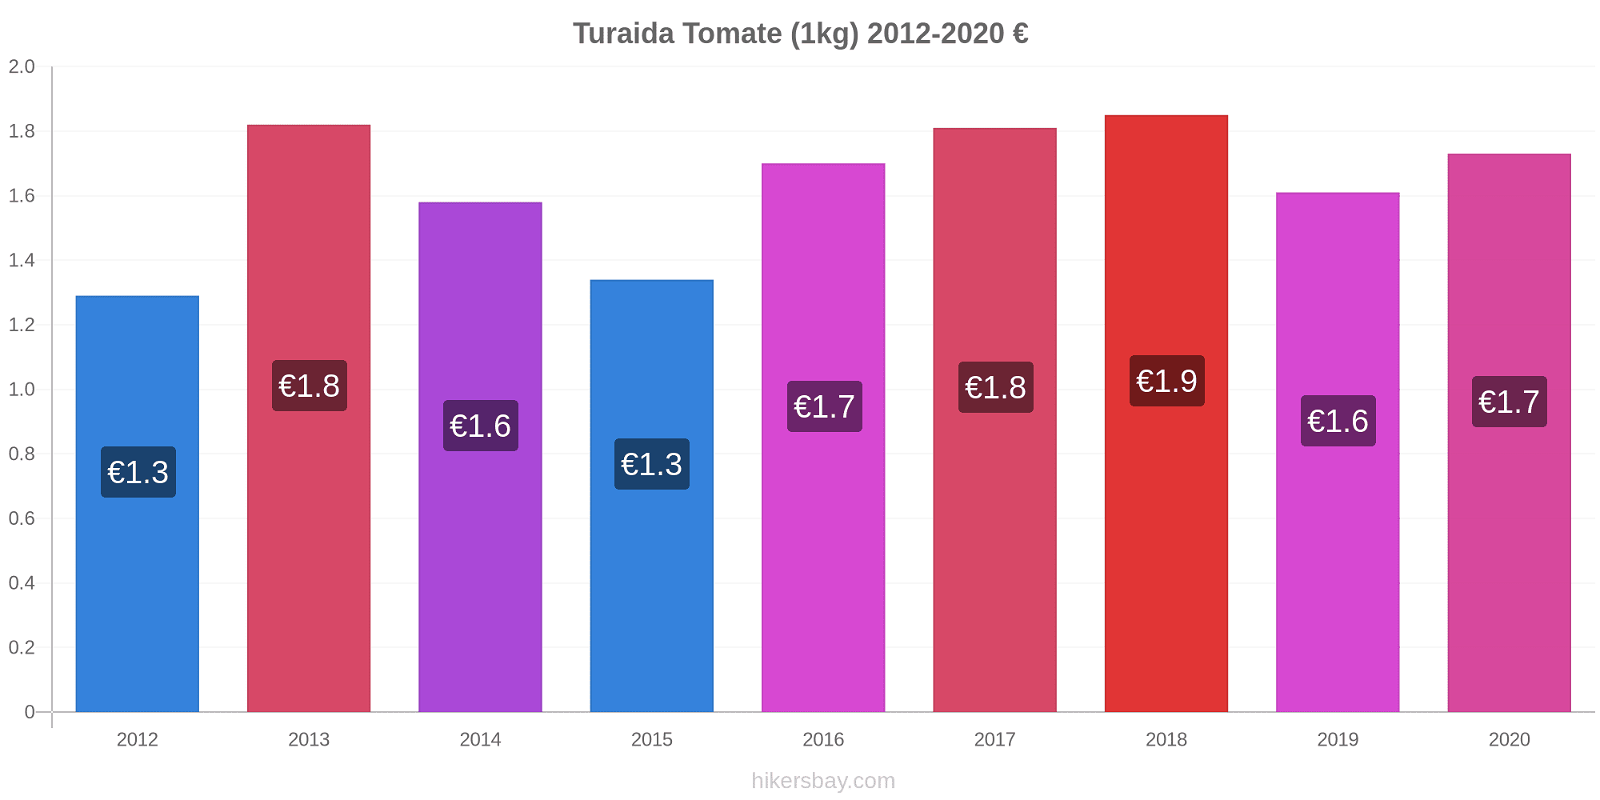 Turaida Preisänderungen Tomaten (1kg) hikersbay.com